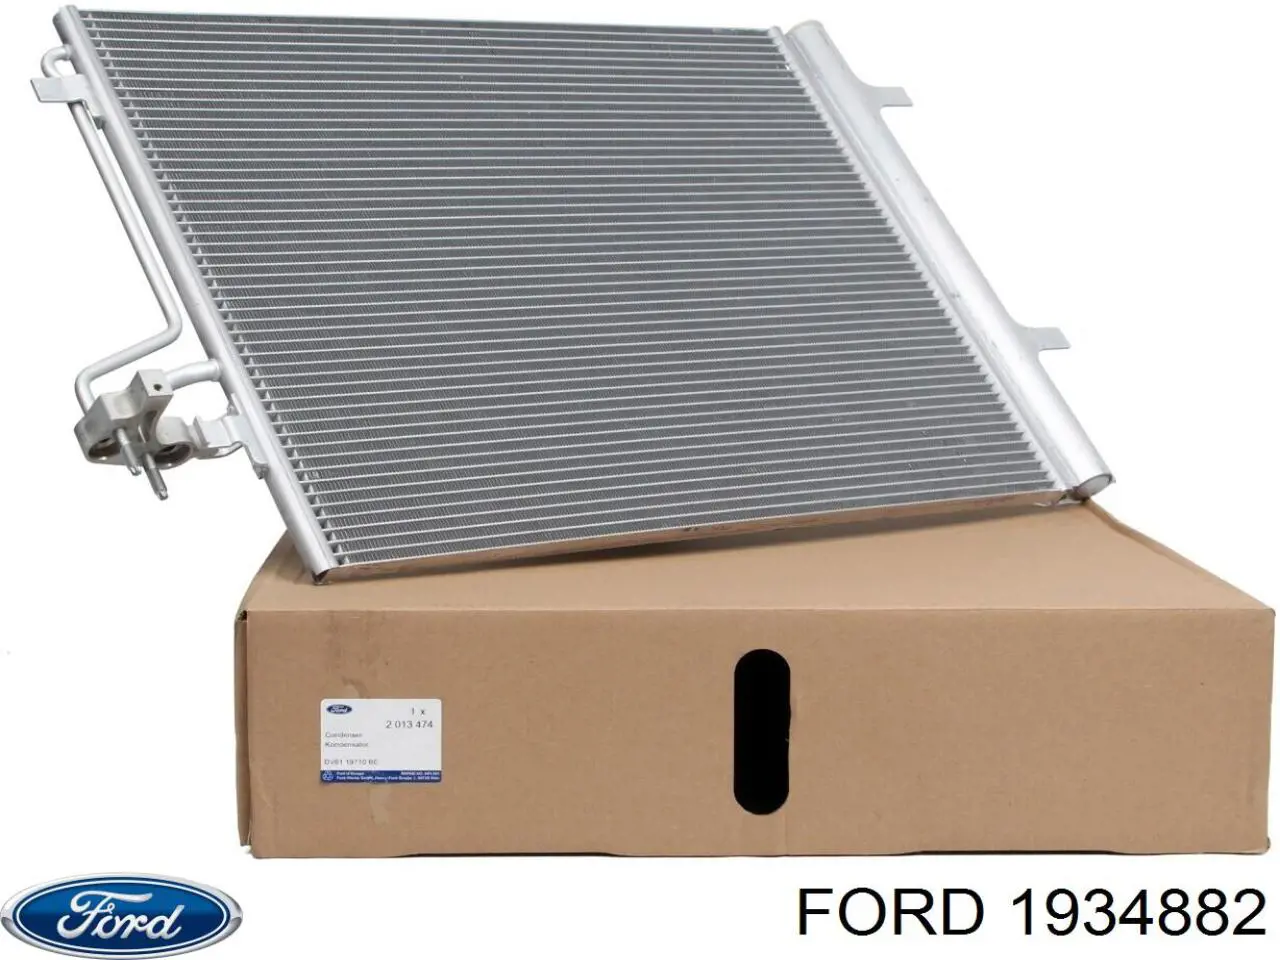 1934882 Ford condensador aire acondicionado